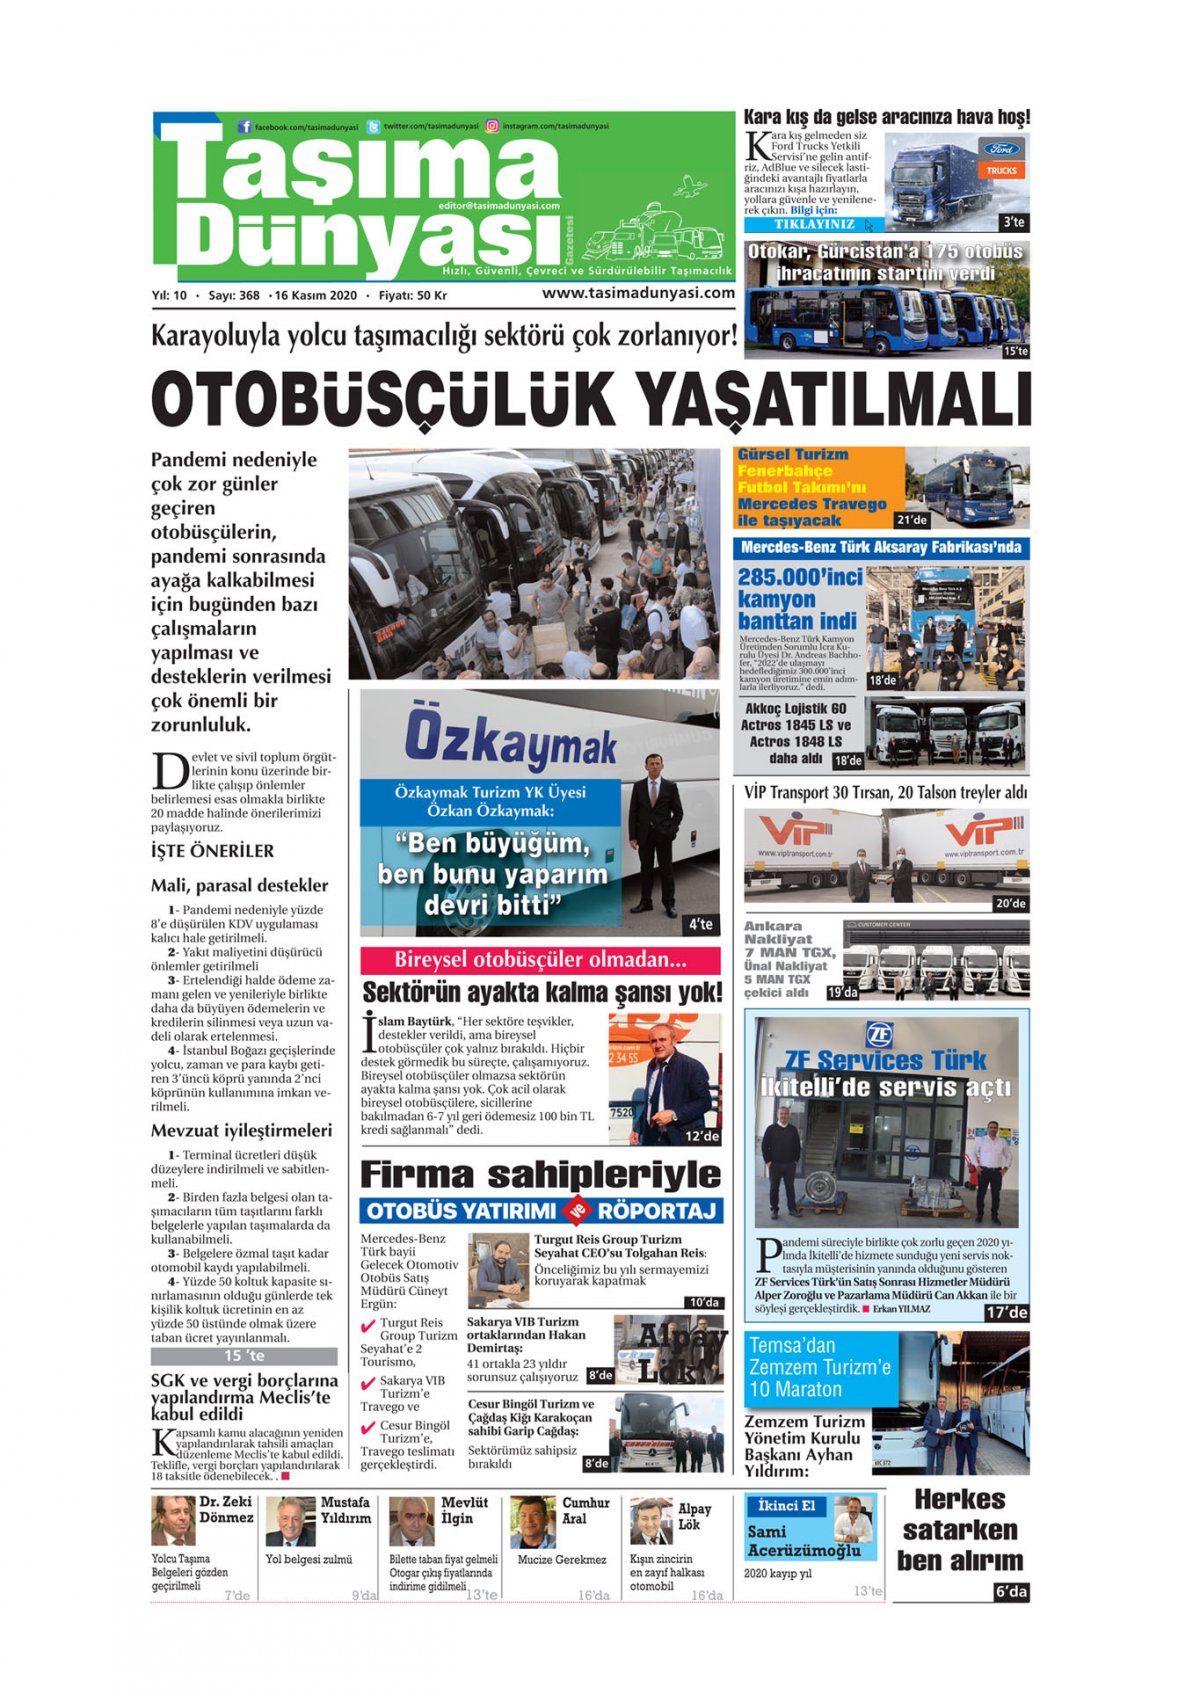 Taşıma Dünyası Gazetesi - 13.11.2020 Manşeti